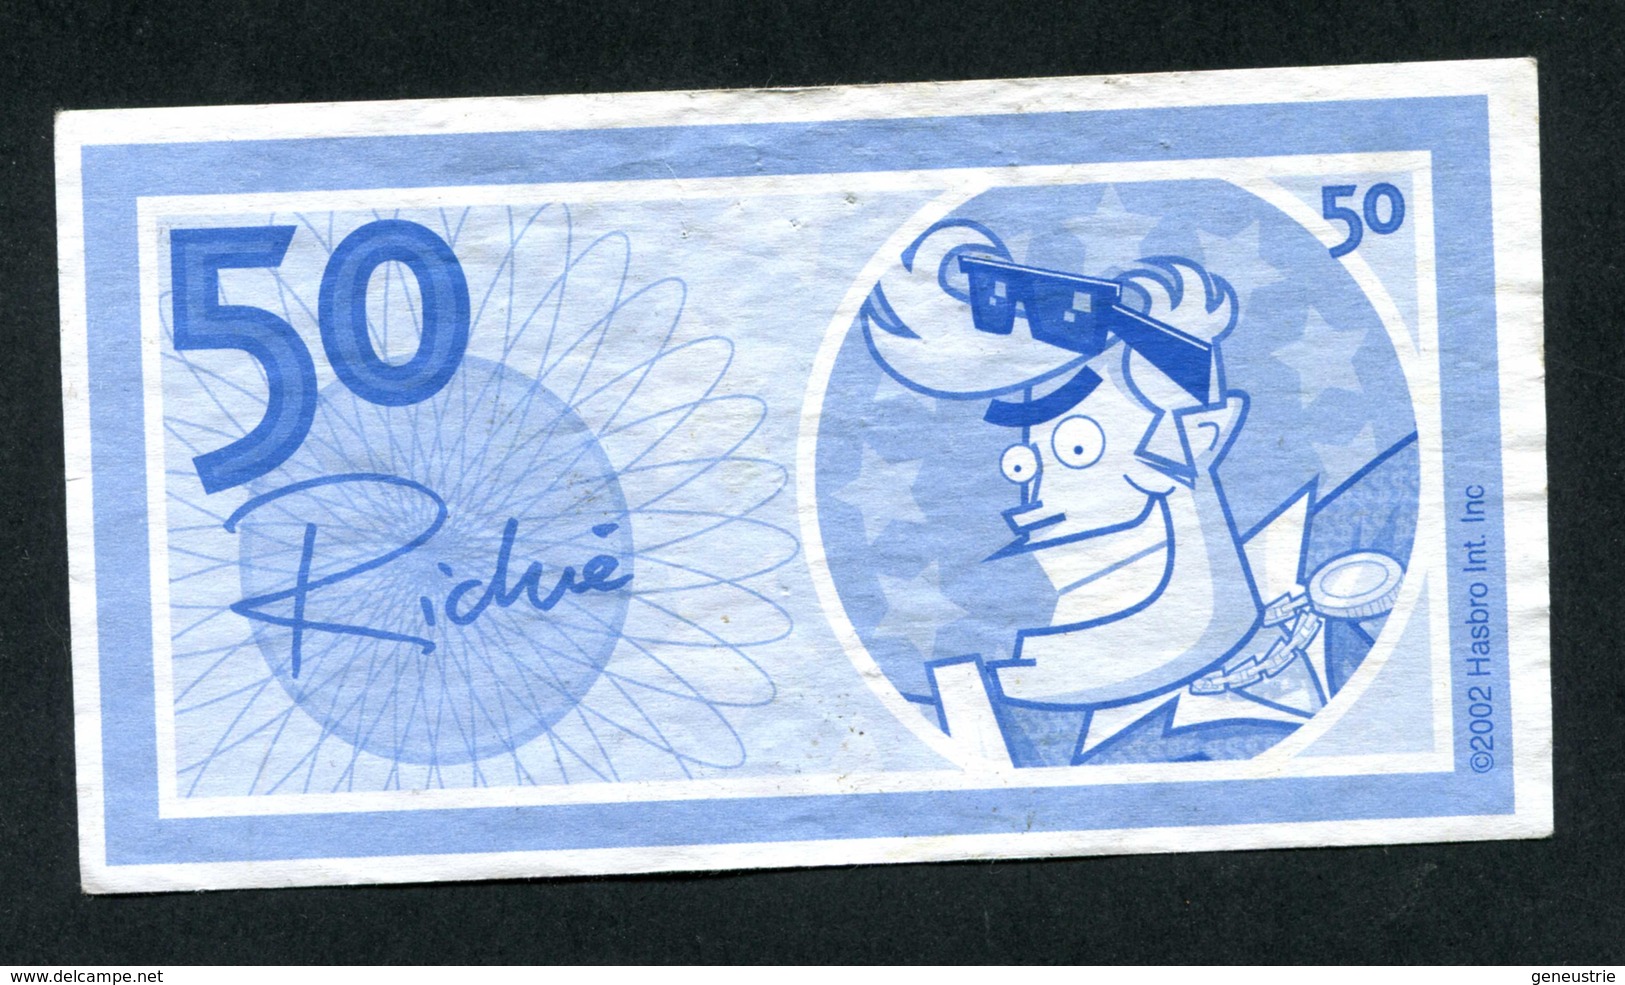 Billet De Banque Fantaisie (de Jeu ?) "50 / Richie" Banknote - Fictifs & Spécimens